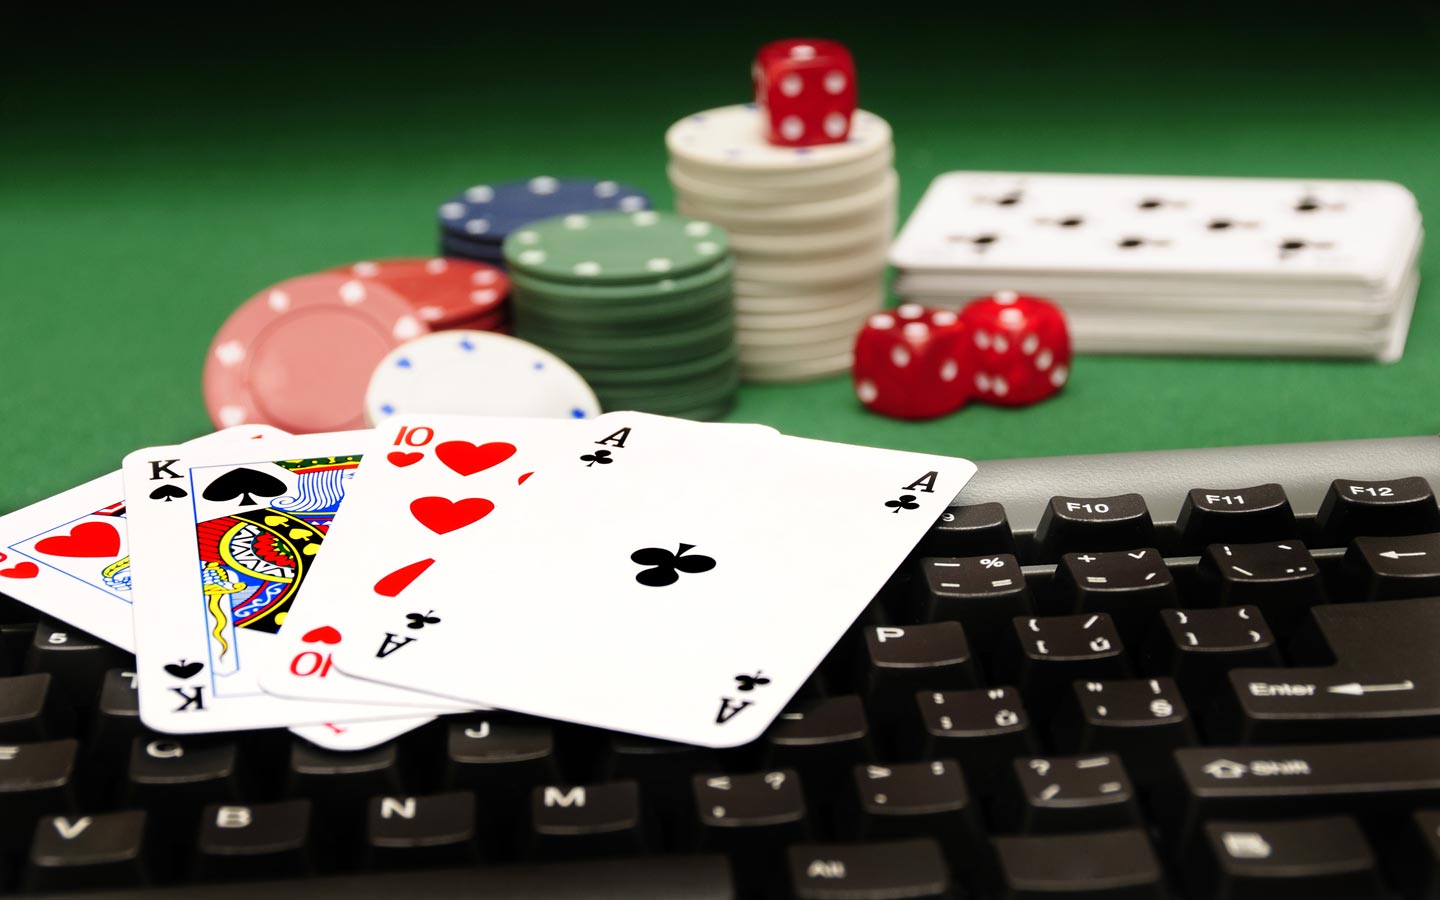 Online gambling in Europe